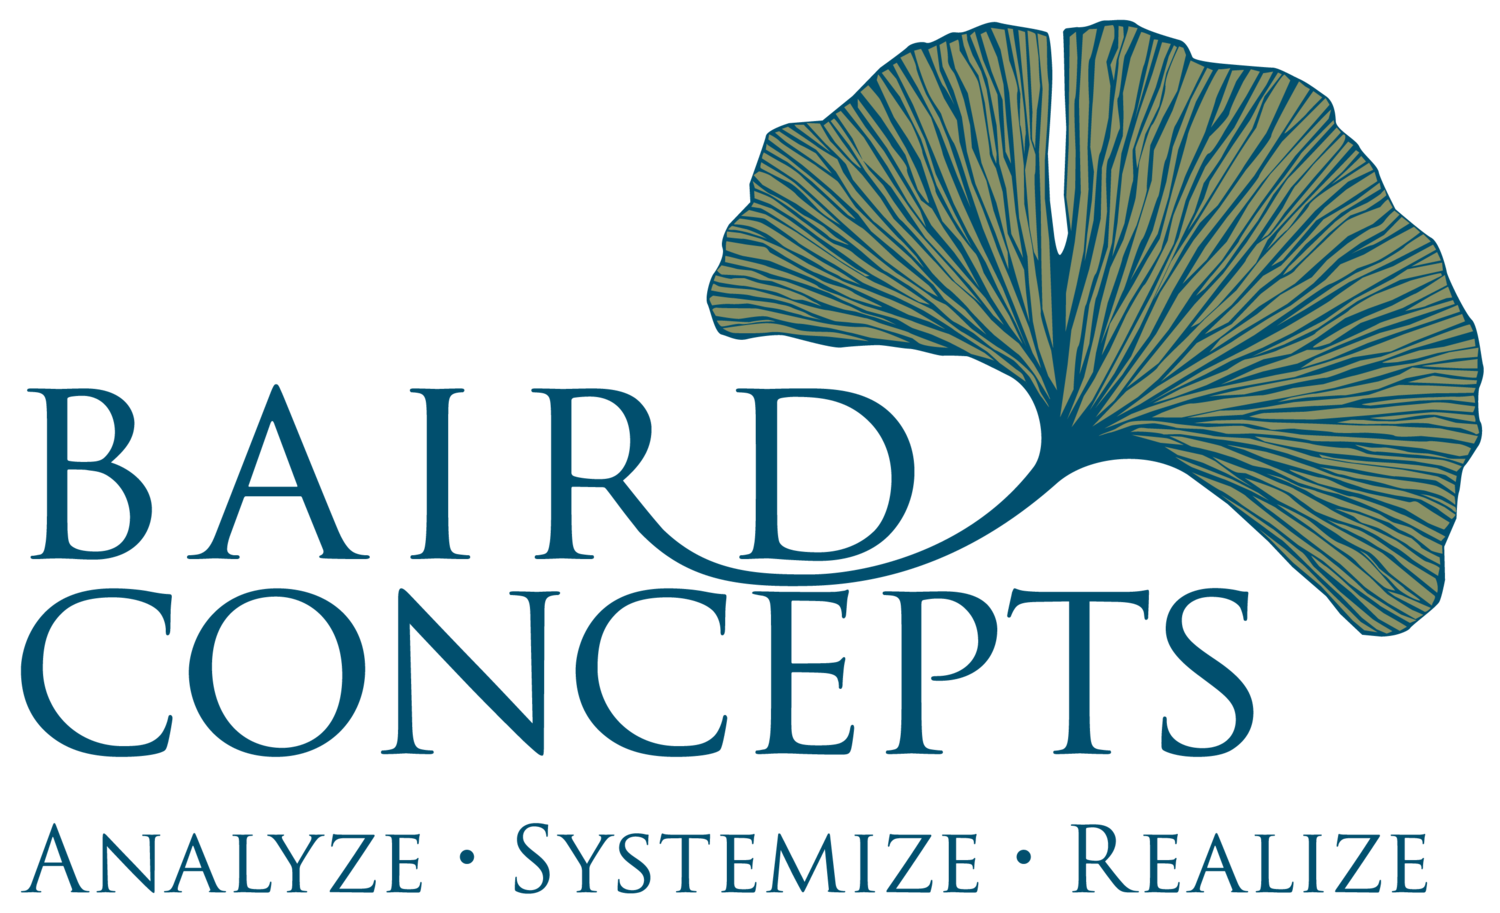 Baird Concepts